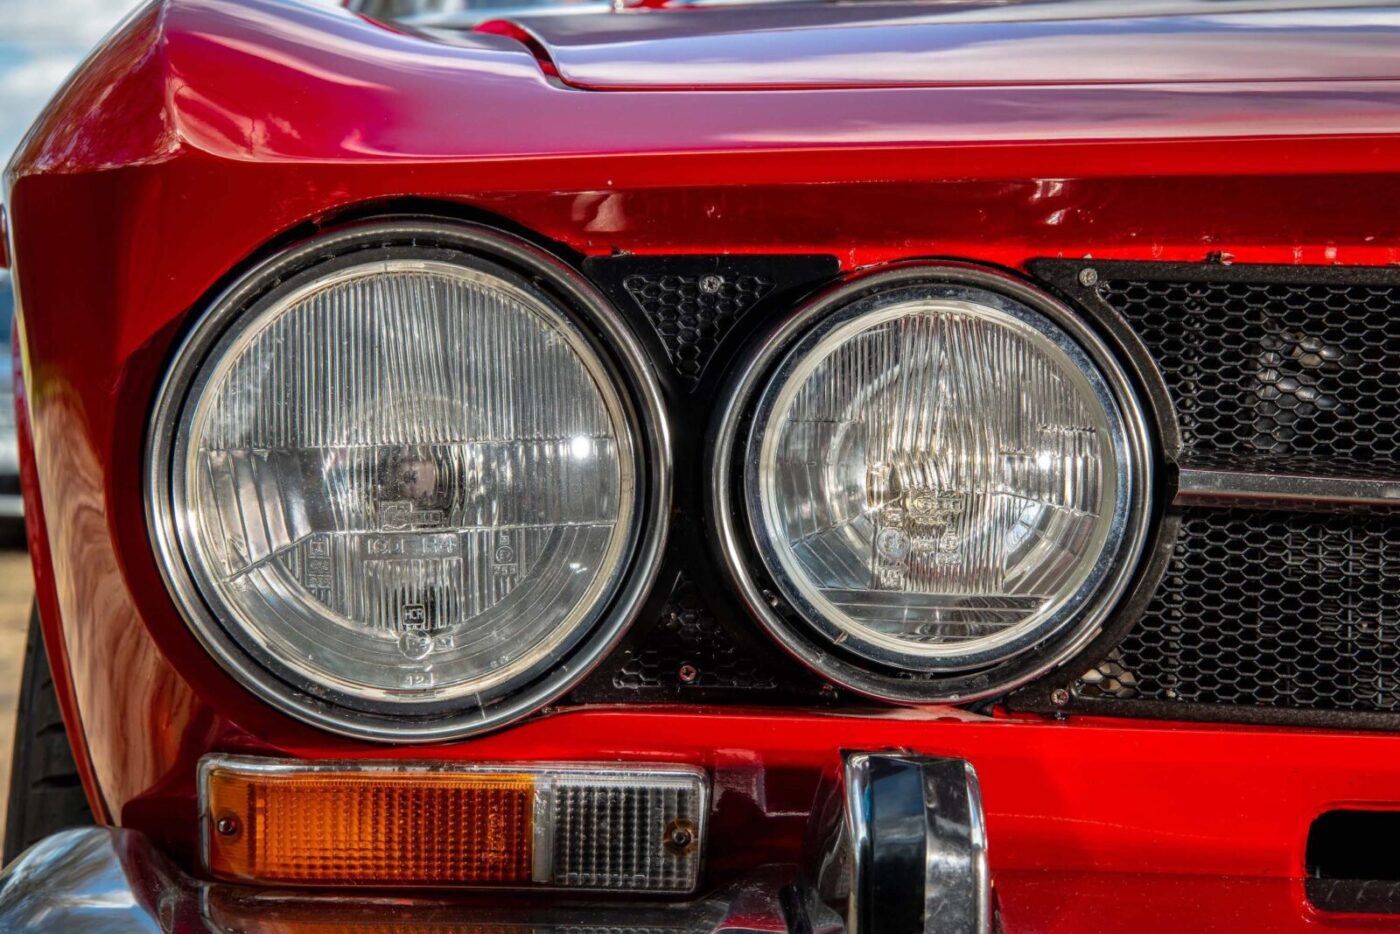 Alfa Romeo 1750 GTV headlamps